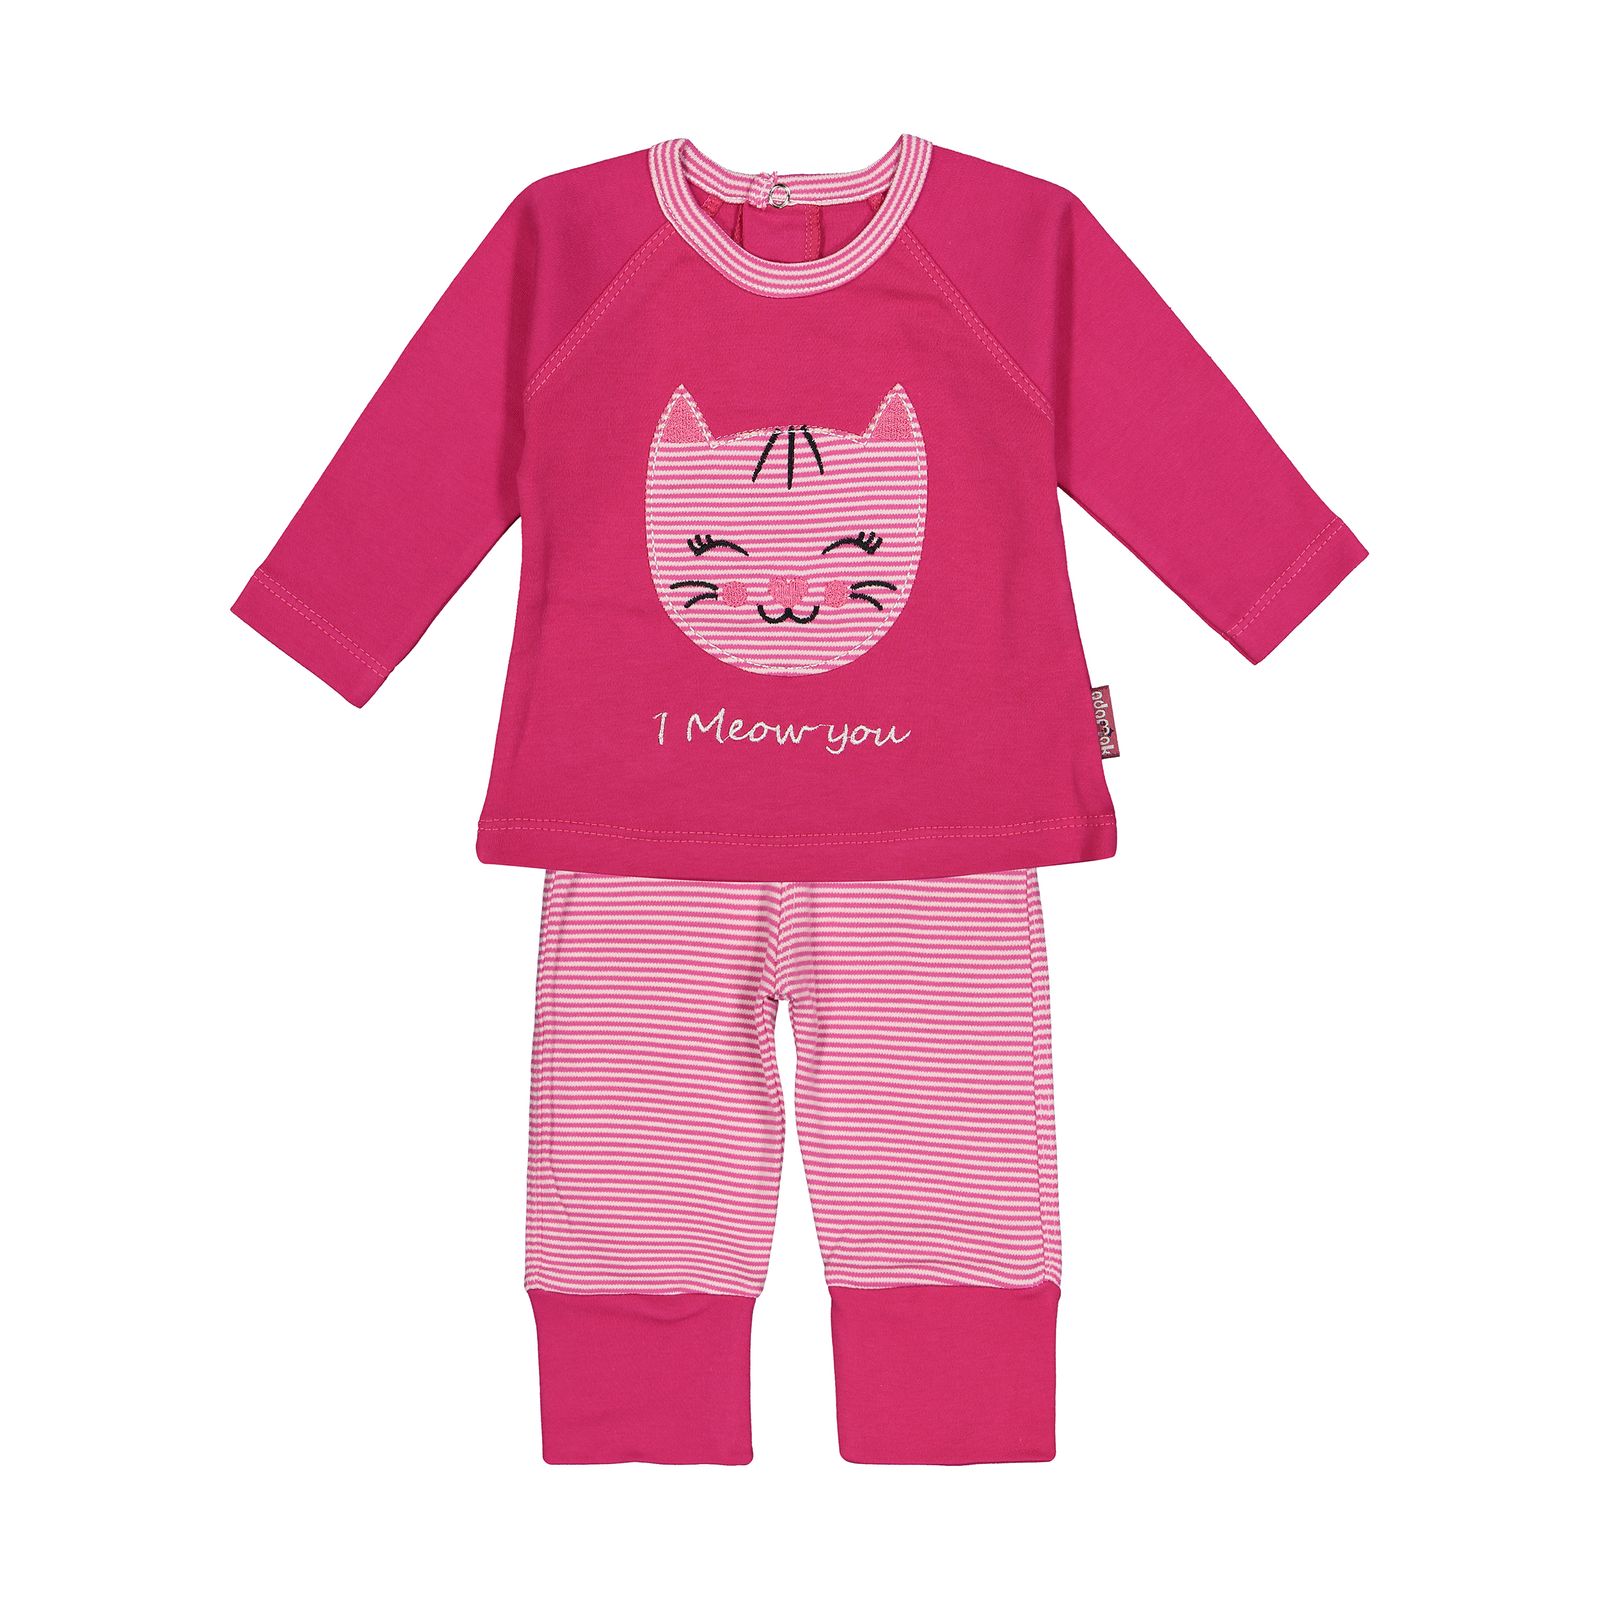 ست تی شرت و شلوار راحتی نوزادی دخترانه آدمک مدل 2171116-66 -  - 1